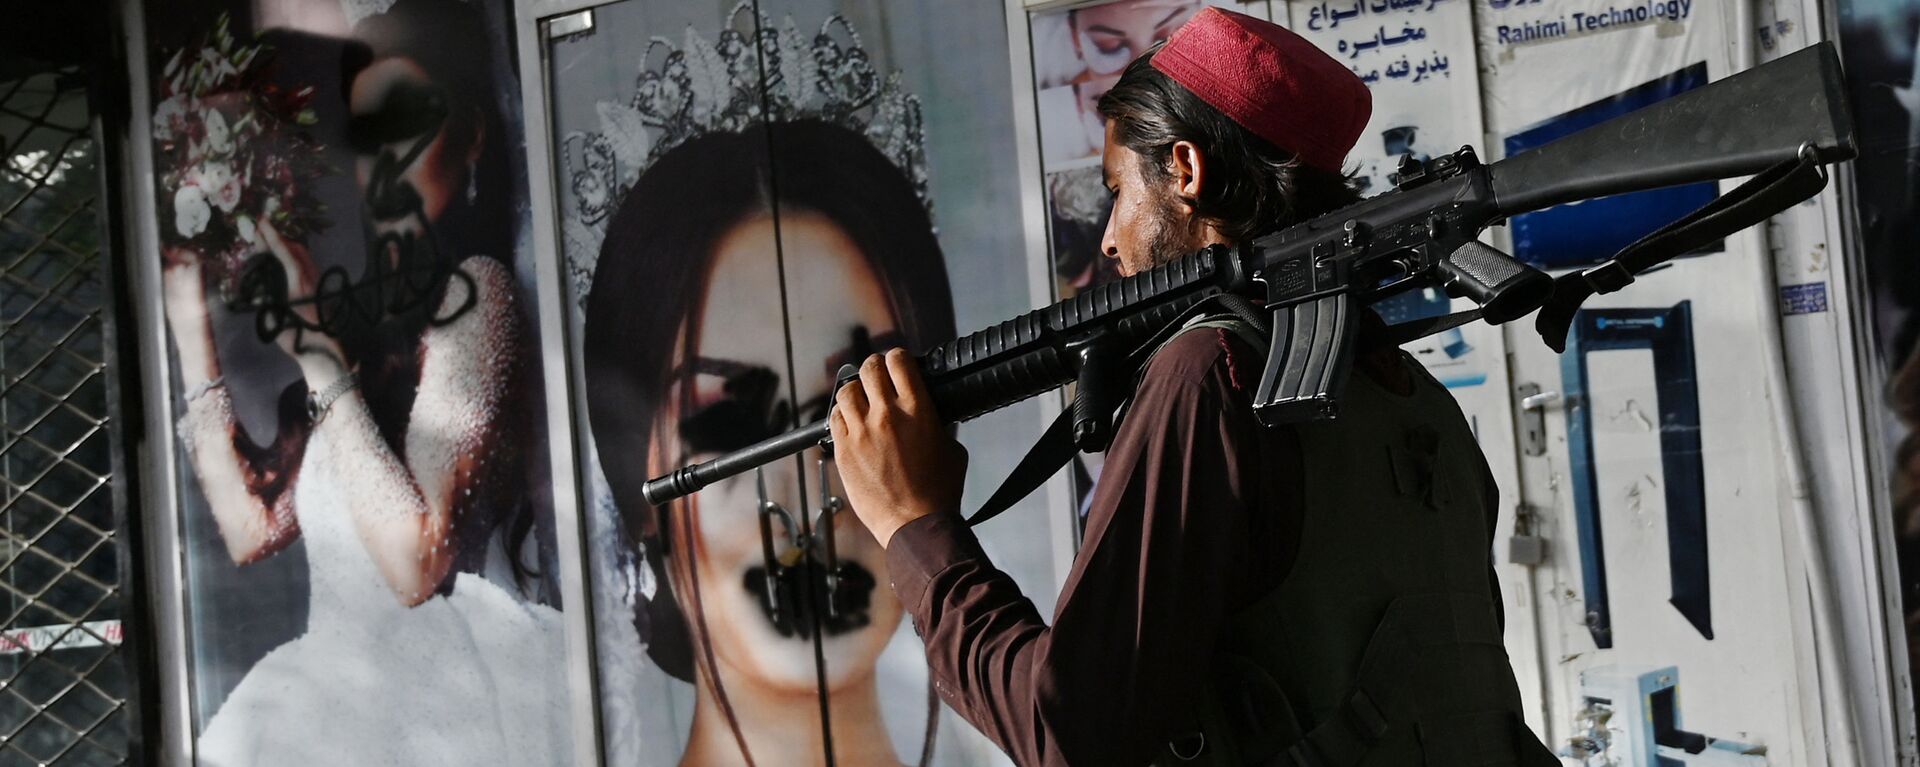 Боевик Талибана* у салона красоты с изображениями женщин, испачканных аэрозольной краской, в Шахр-э Нау в Кабуле - Sputnik Узбекистан, 1920, 15.09.2021